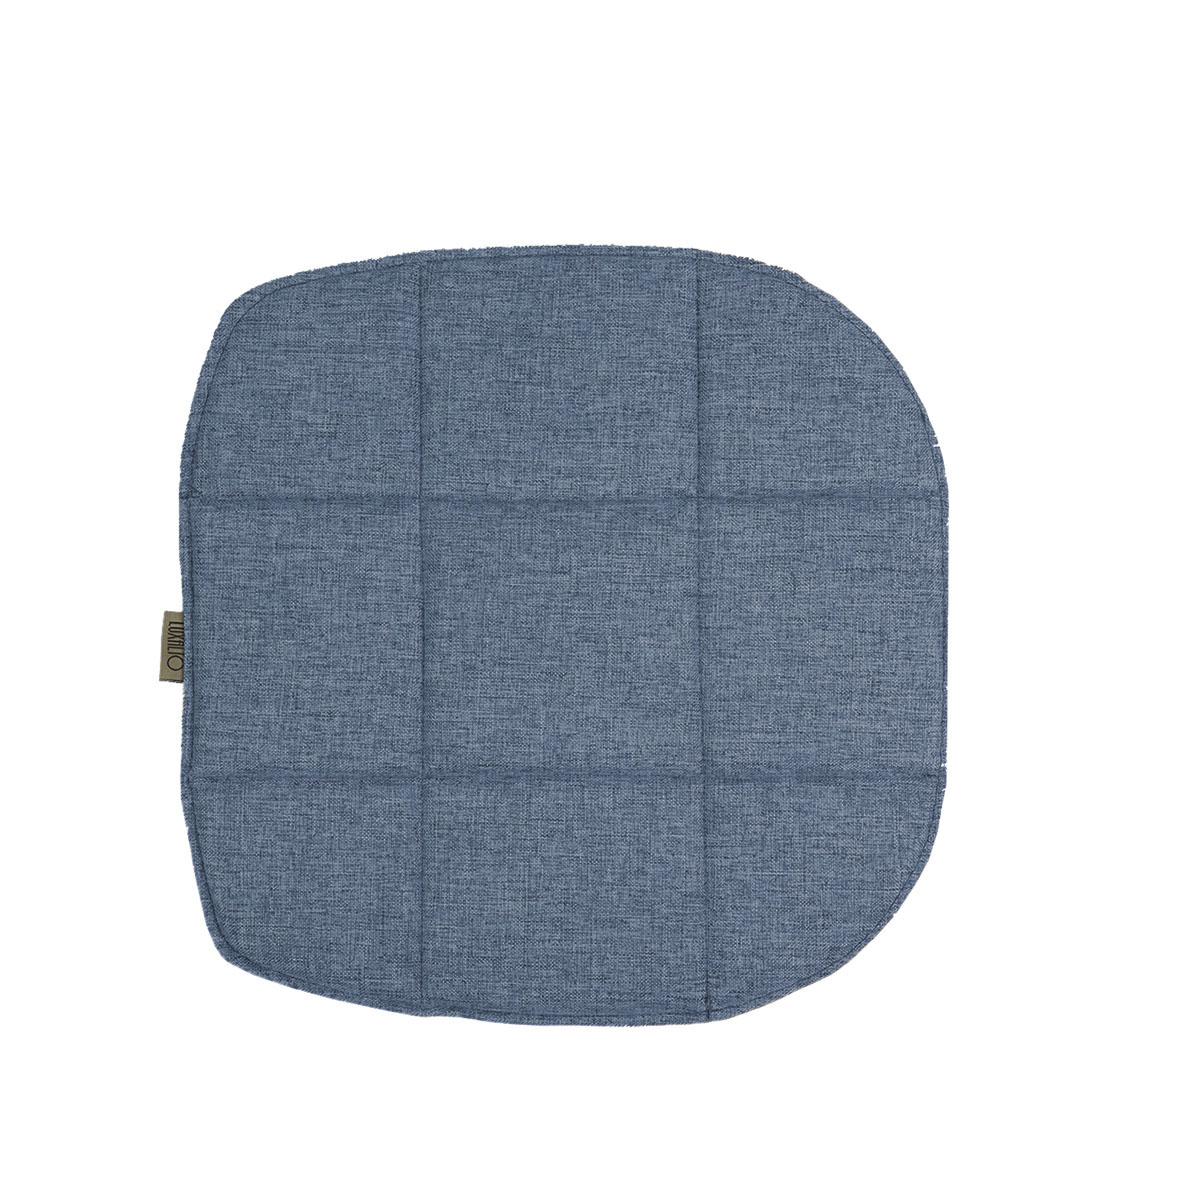 Подушка на стул LuxAlto для модели Eames/Aspen, рогожка джинсовый (Laguna 795), 4 шт.